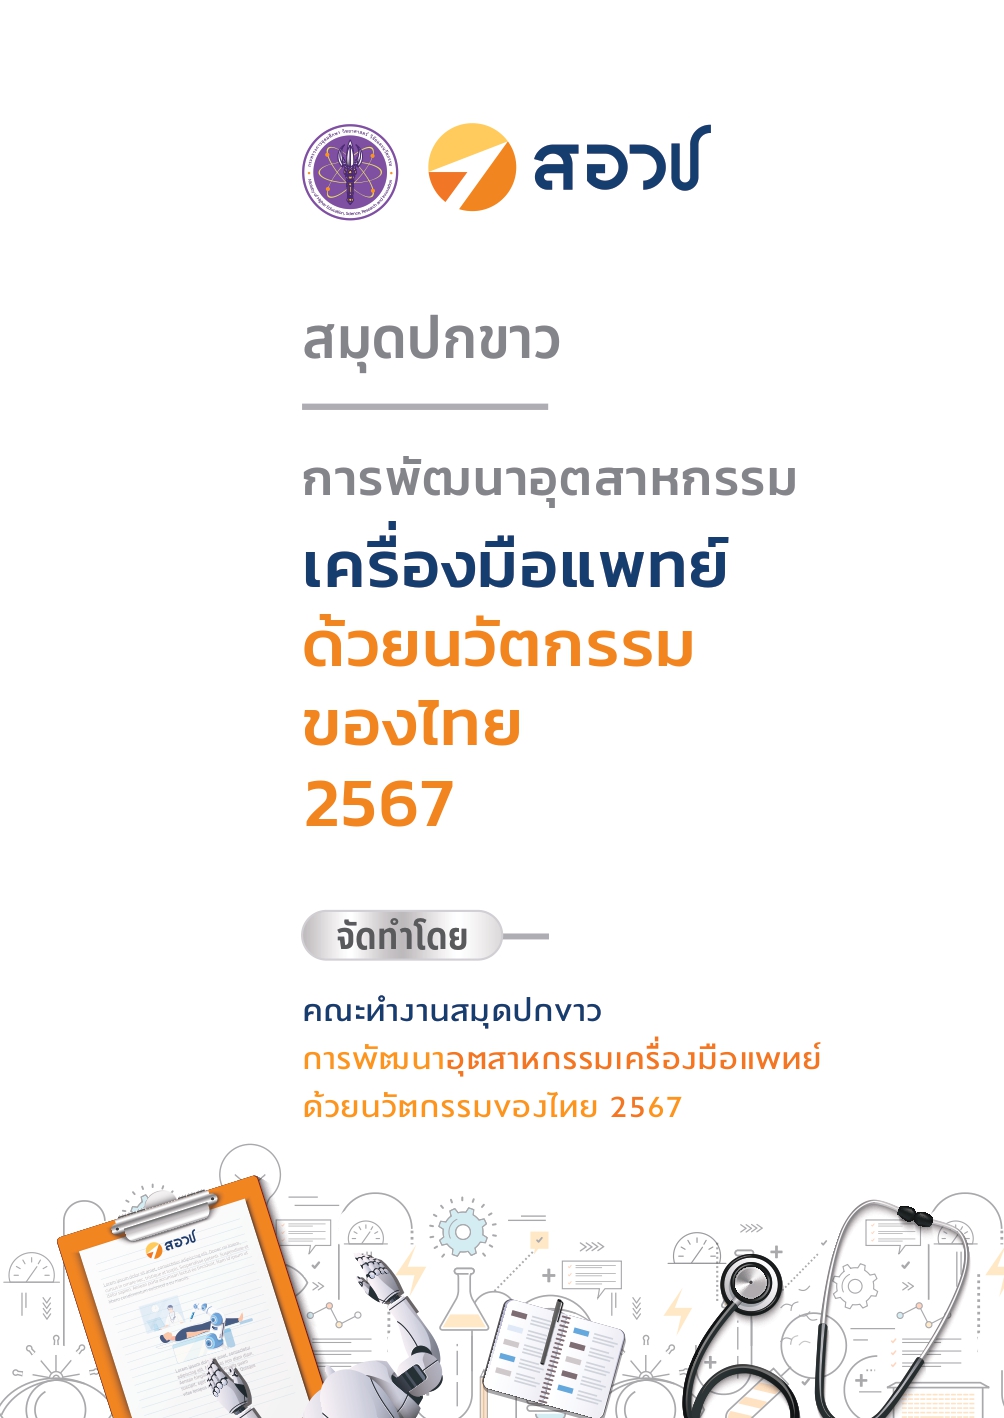 สมุดปกขาวการพัฒนาอุตสาหกรรมเครื่องมือแพทย์ด้วยนวัตกรรมของไทย 2567